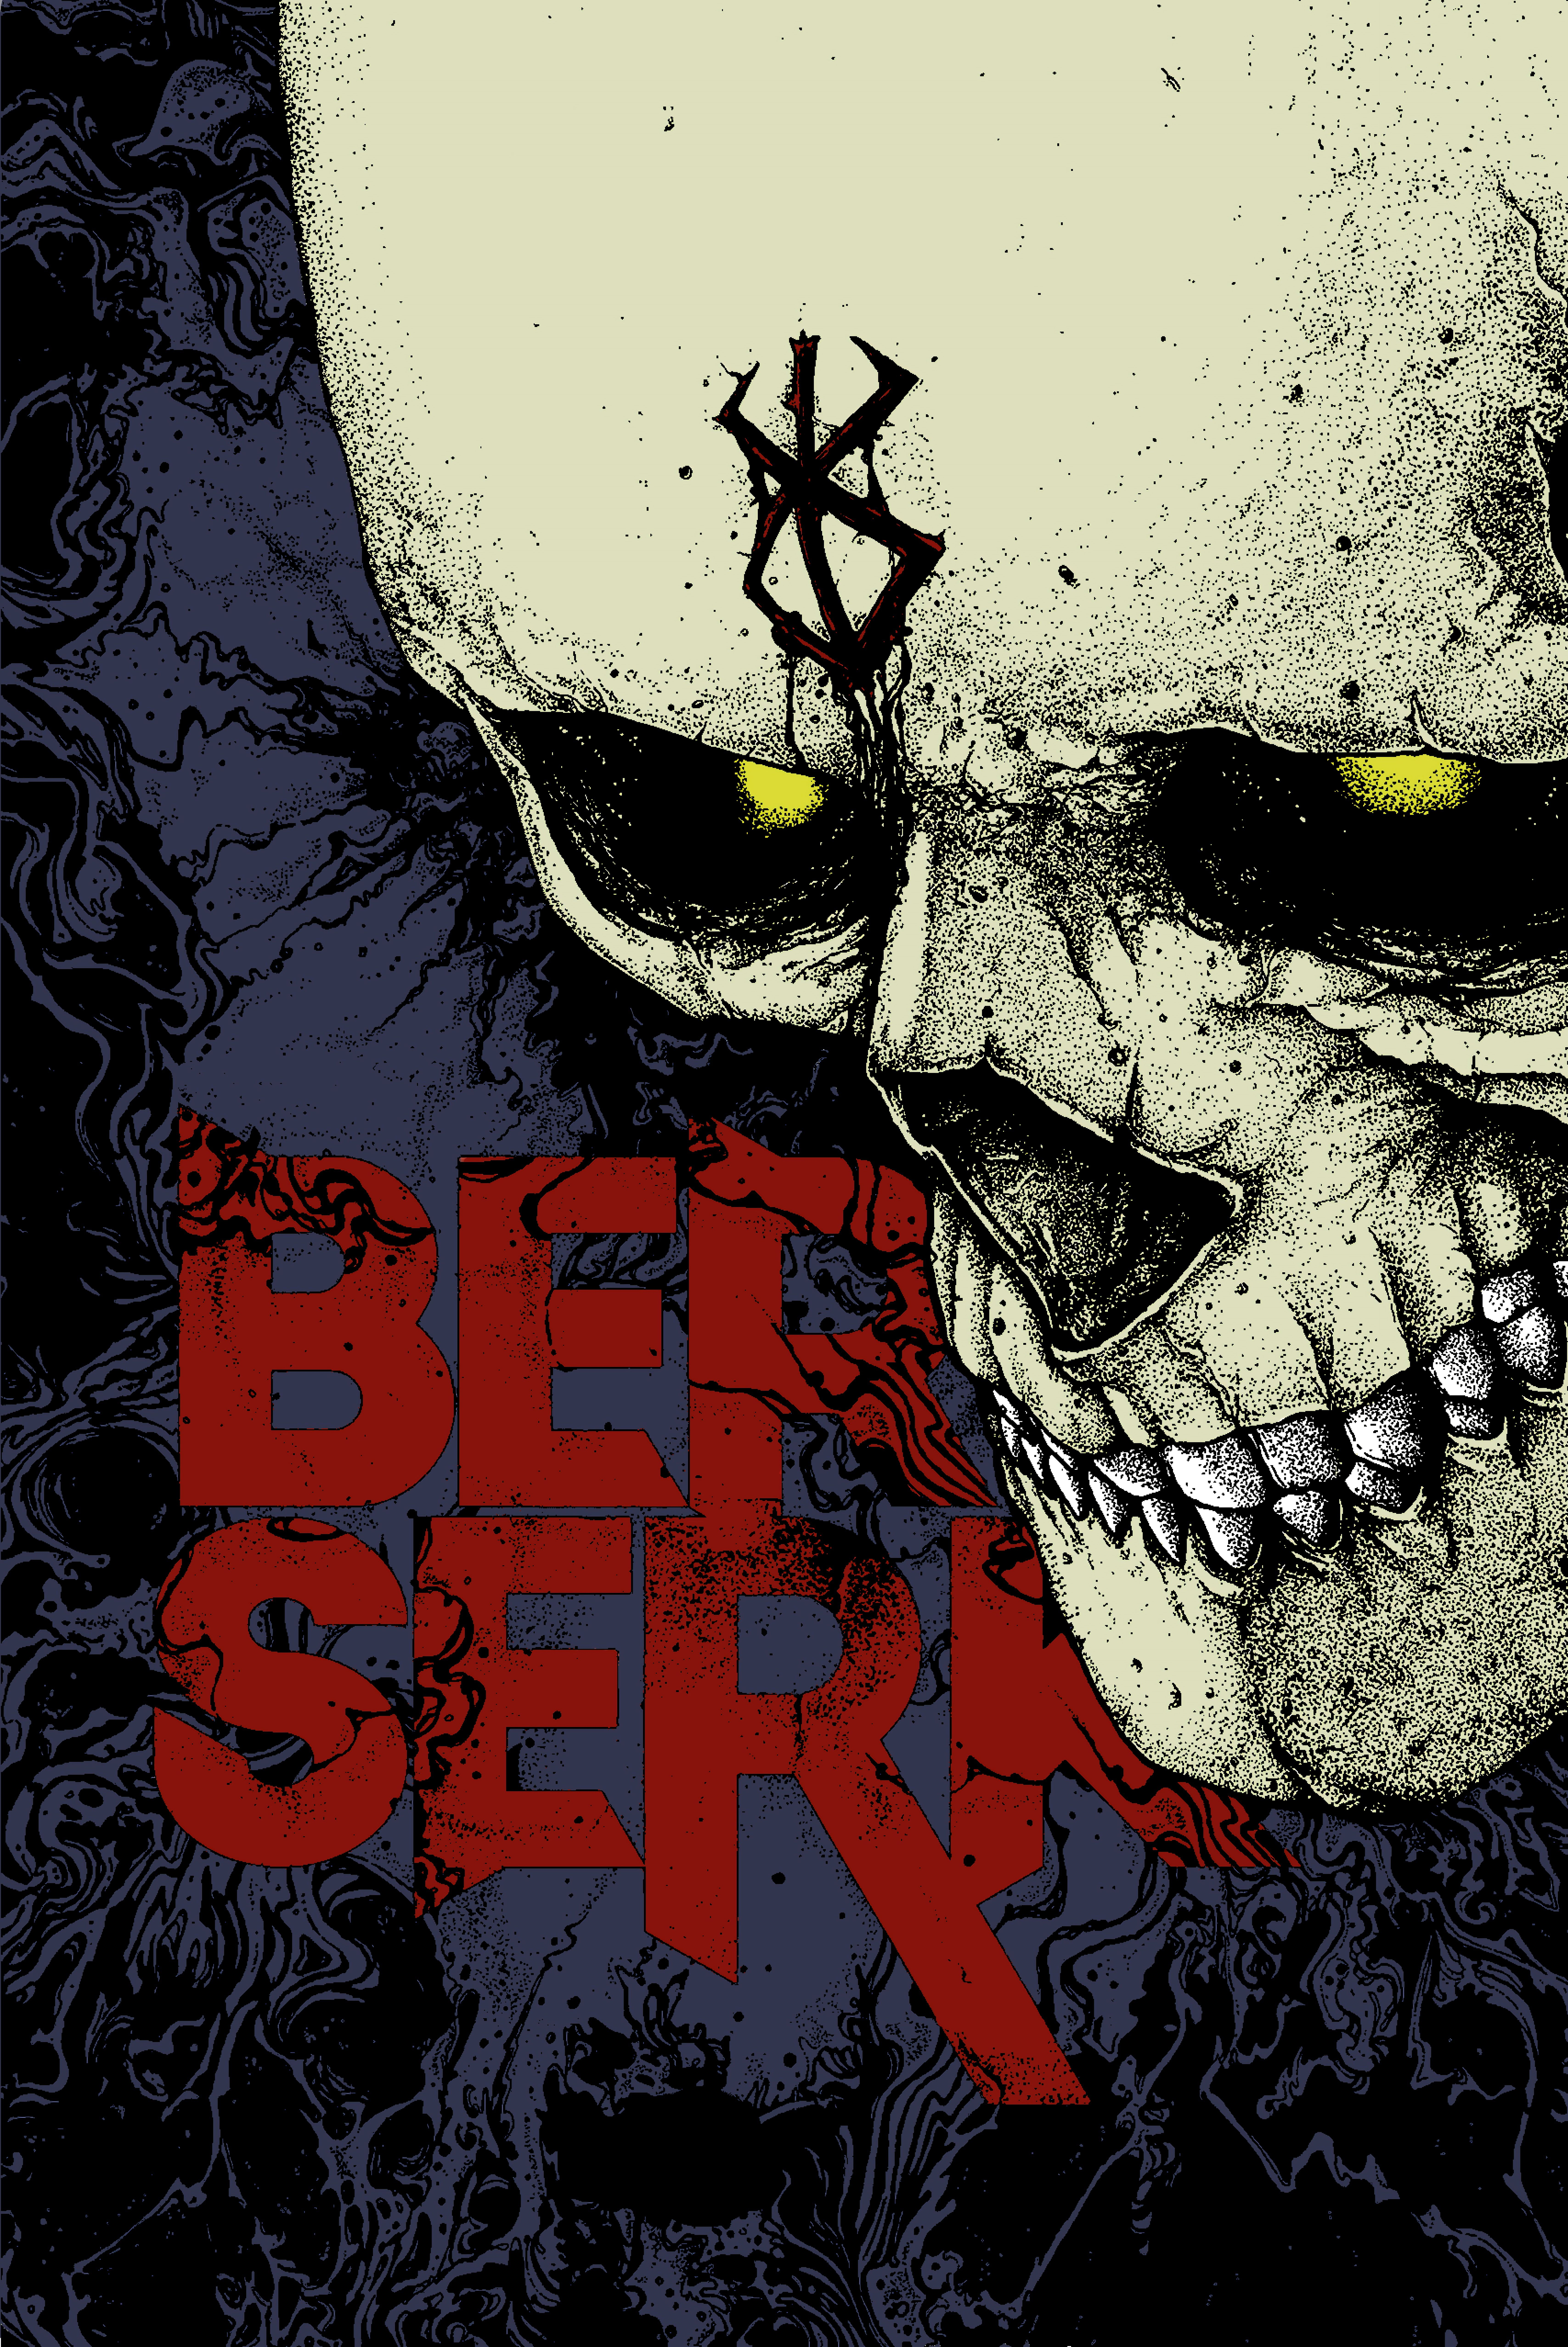 Berserk #skull digital art #Guts Skull Knight #manga K #wallpaper #hdwallpaper #desktop. Berserk, Manga, Dark fantasy